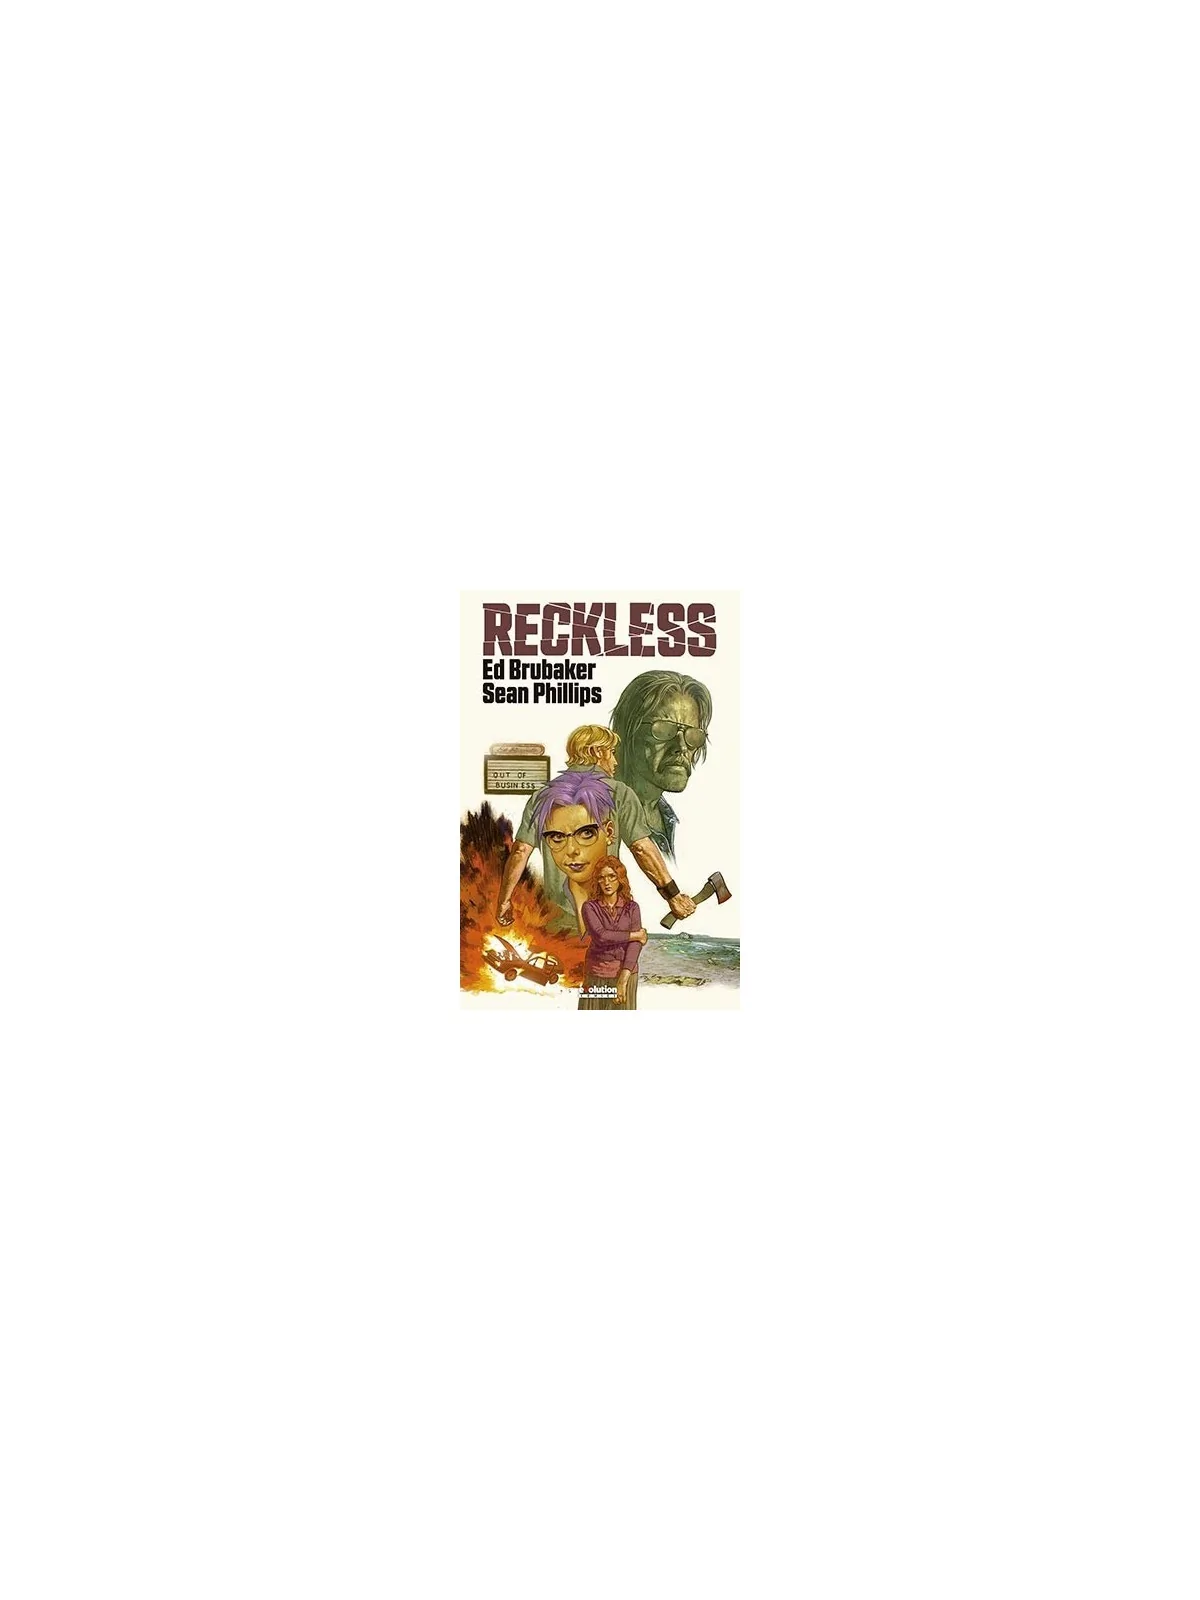 Comprar Reckless 01 barato al mejor precio 19,00 € de Panini Comics